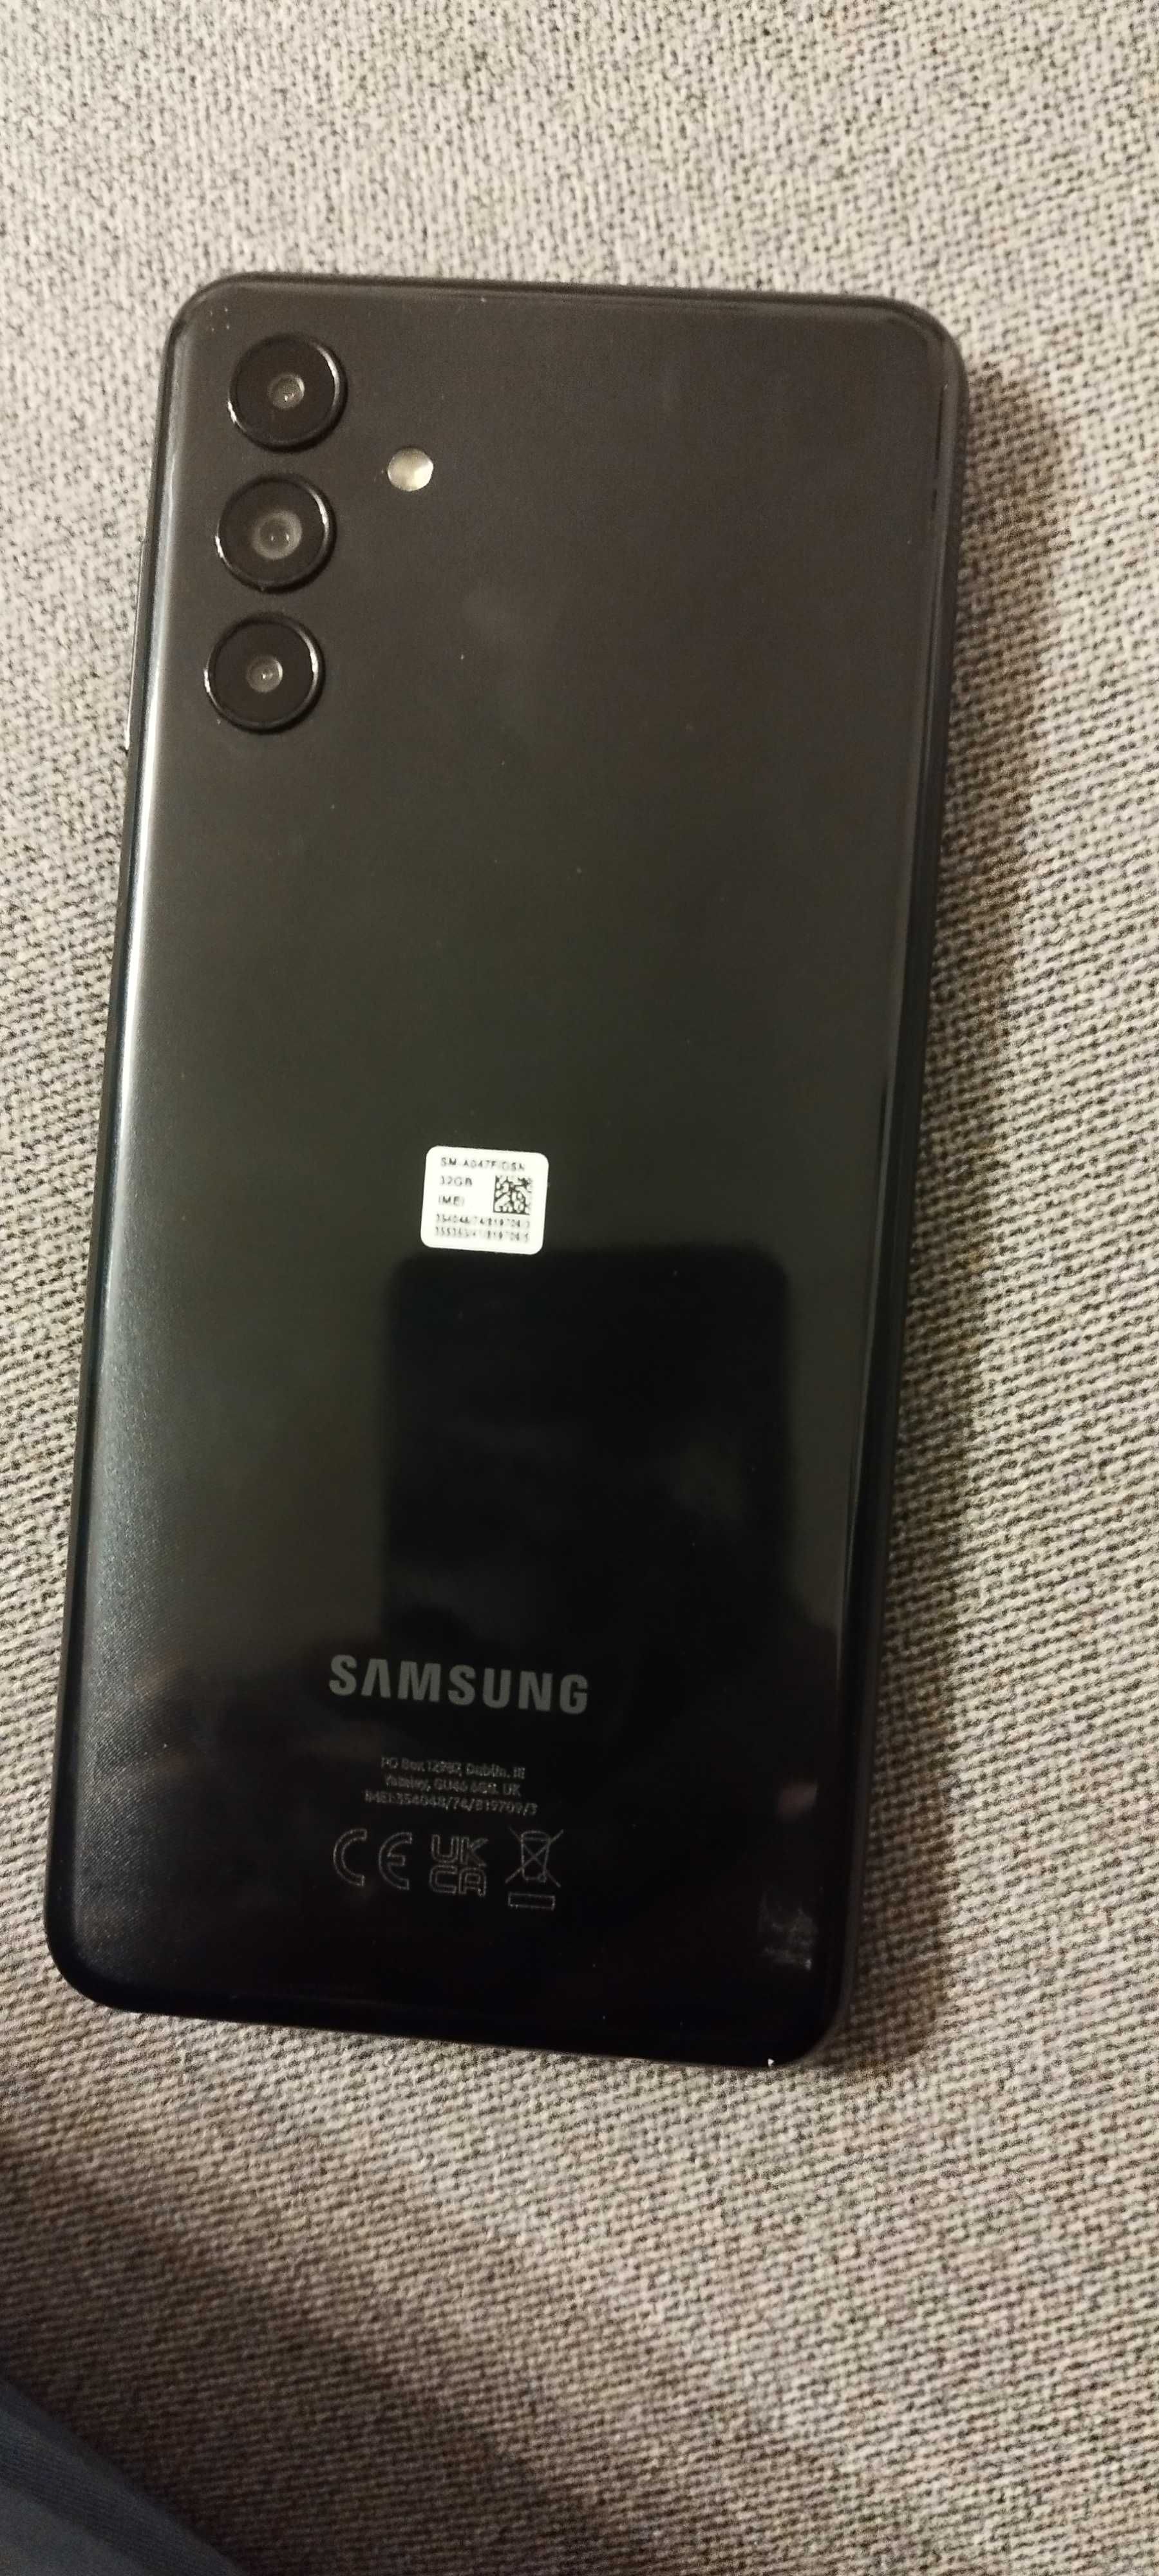 Samsung Galaxy A04s 3/32GB